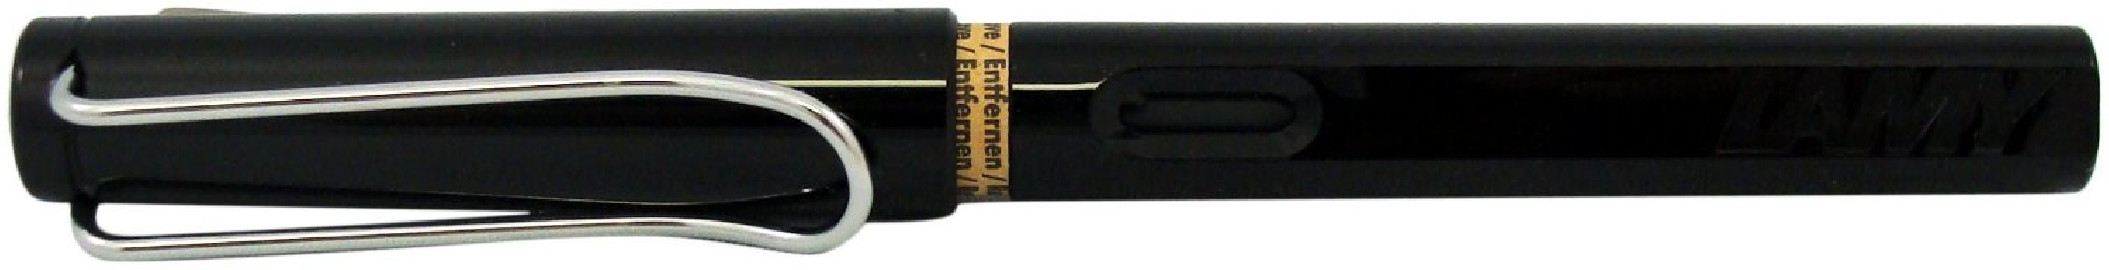 LAMY safari shiny black pen 019